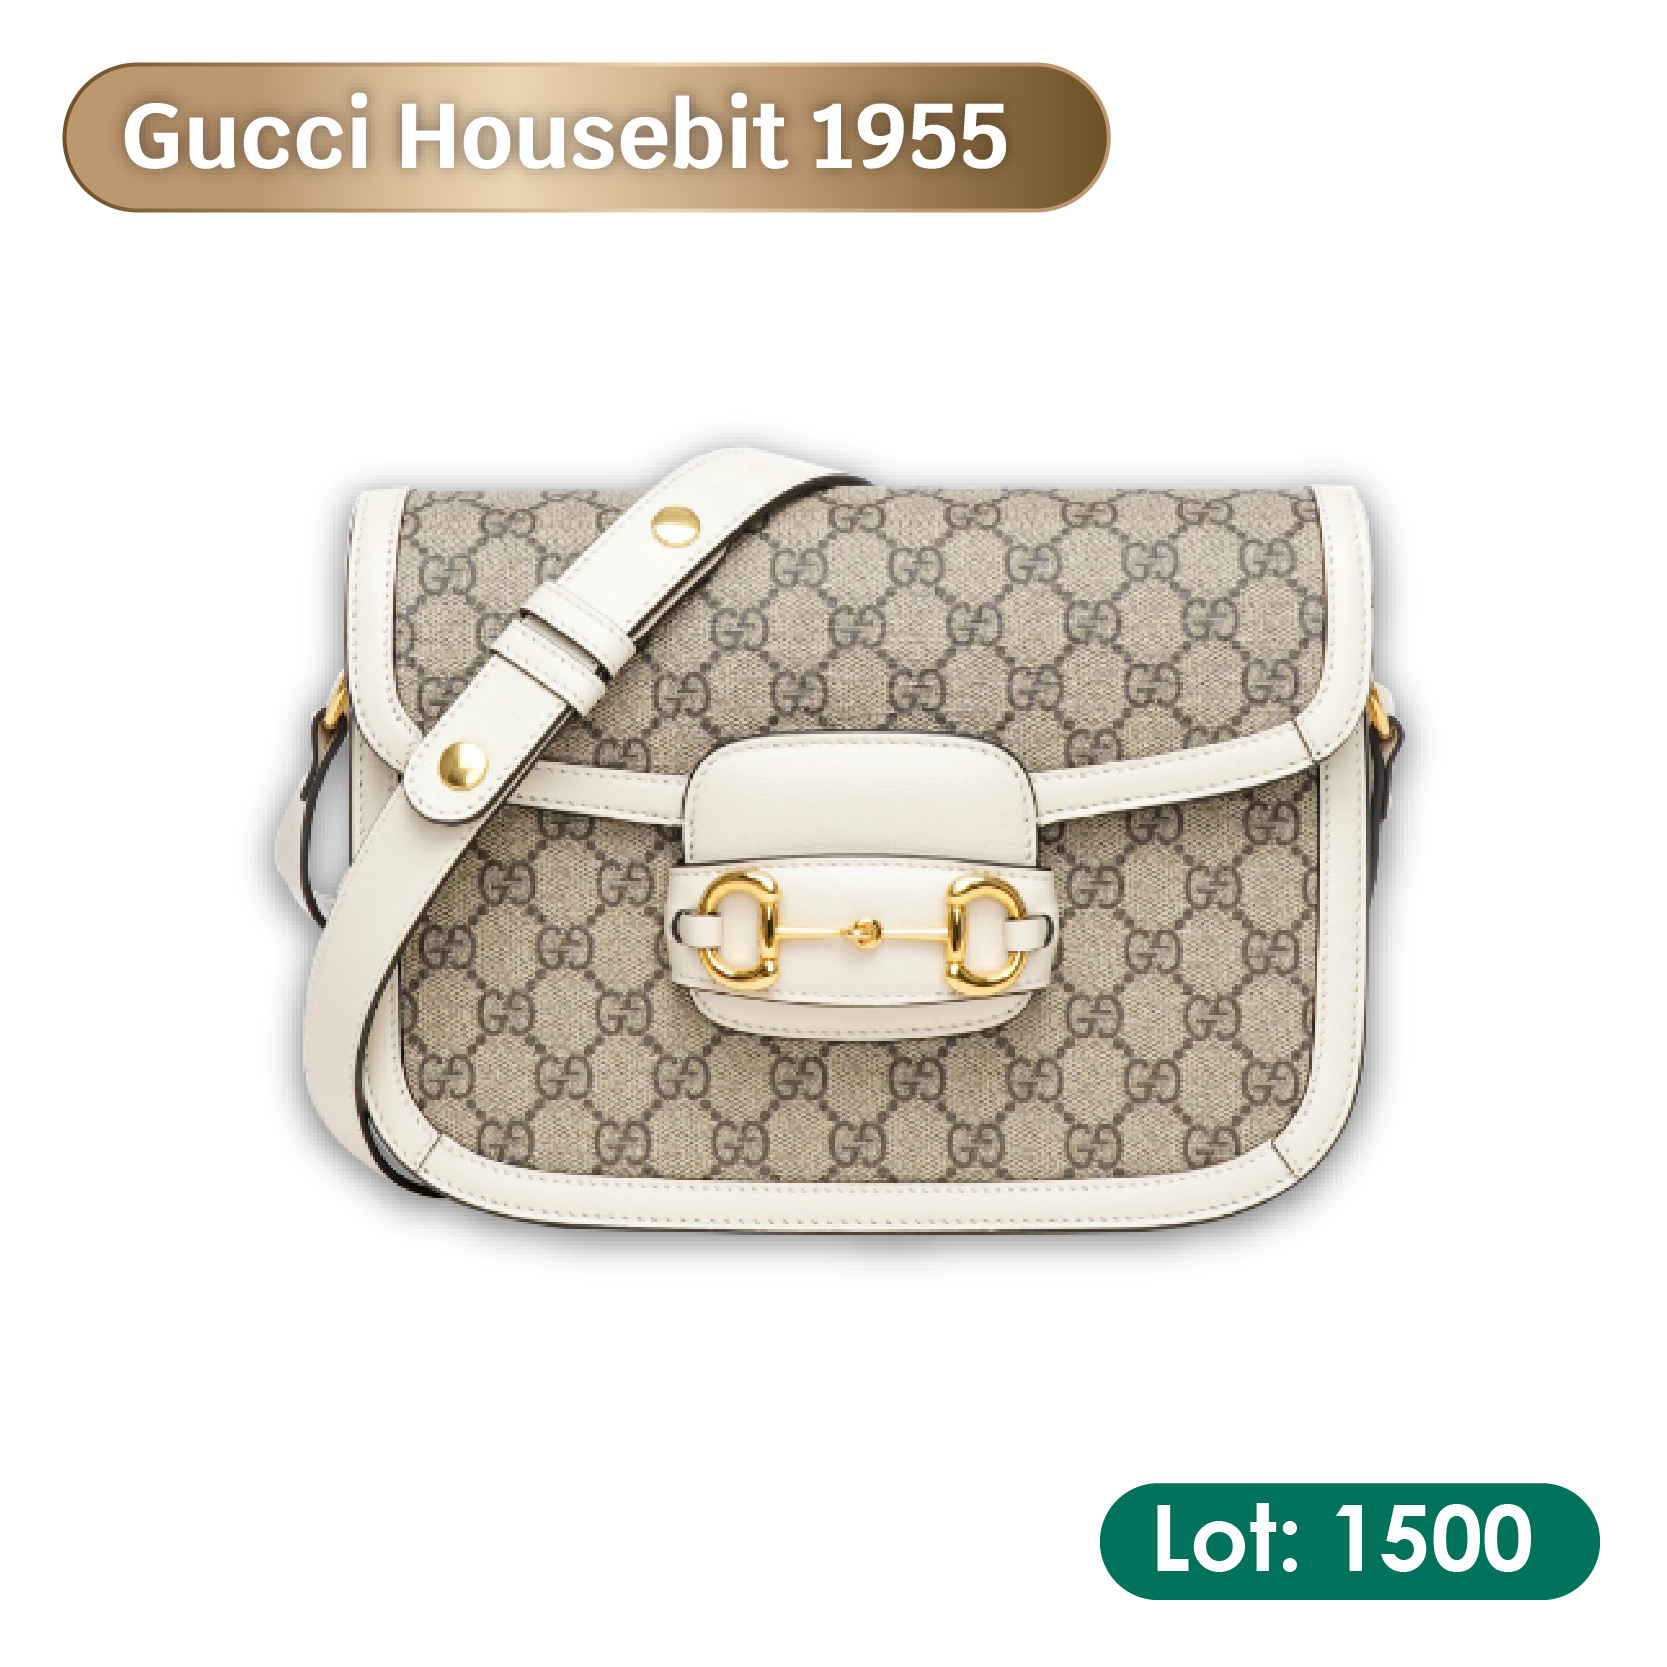 7. Gucci Housebit 1955 | Lot: 1500